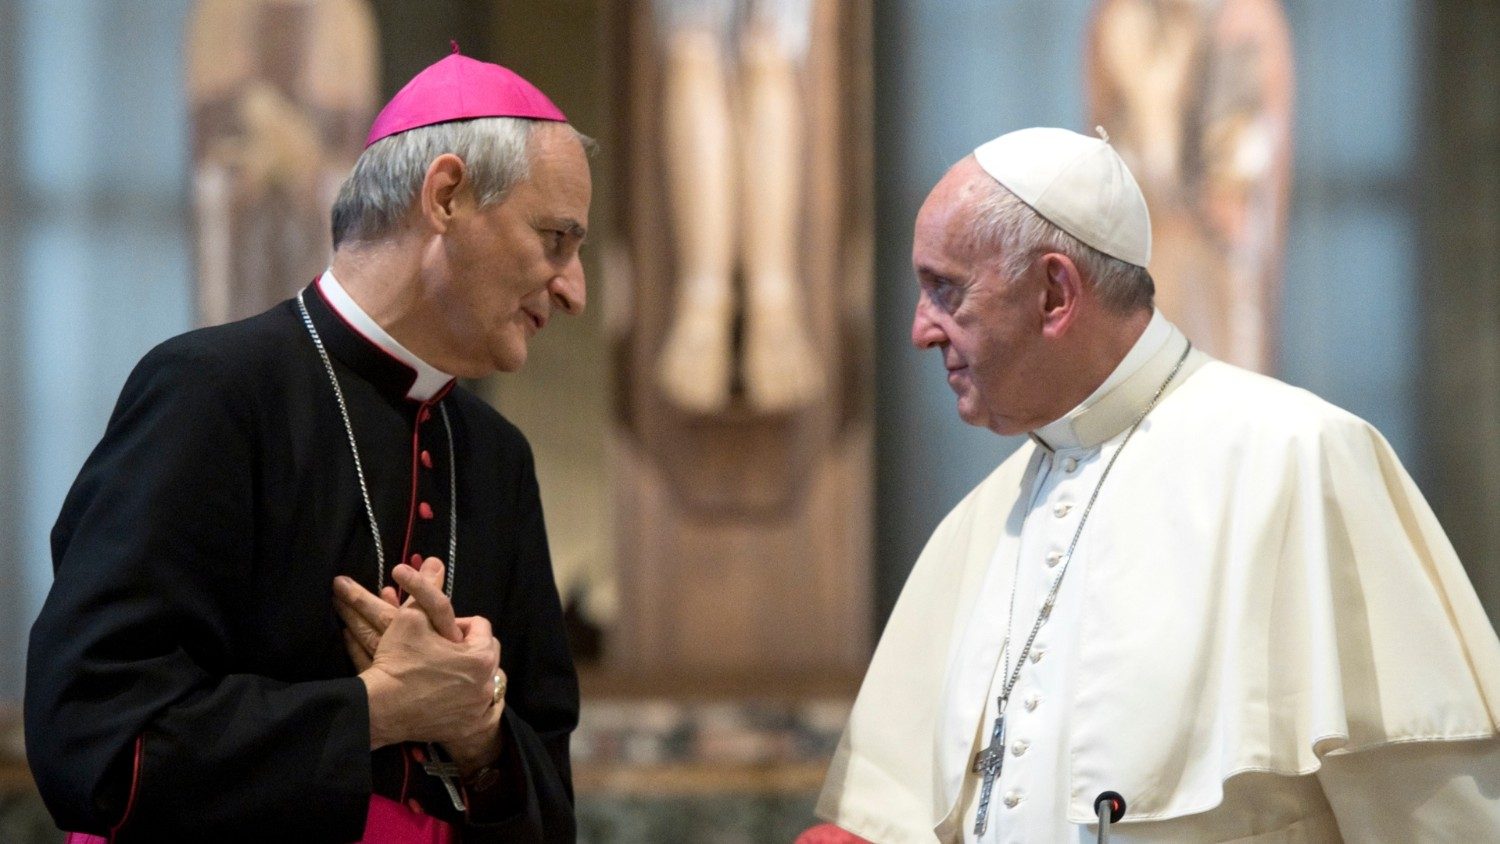 Il cardinale Zuppi: "La logica del riarmo ci può portare dove non si vuole"